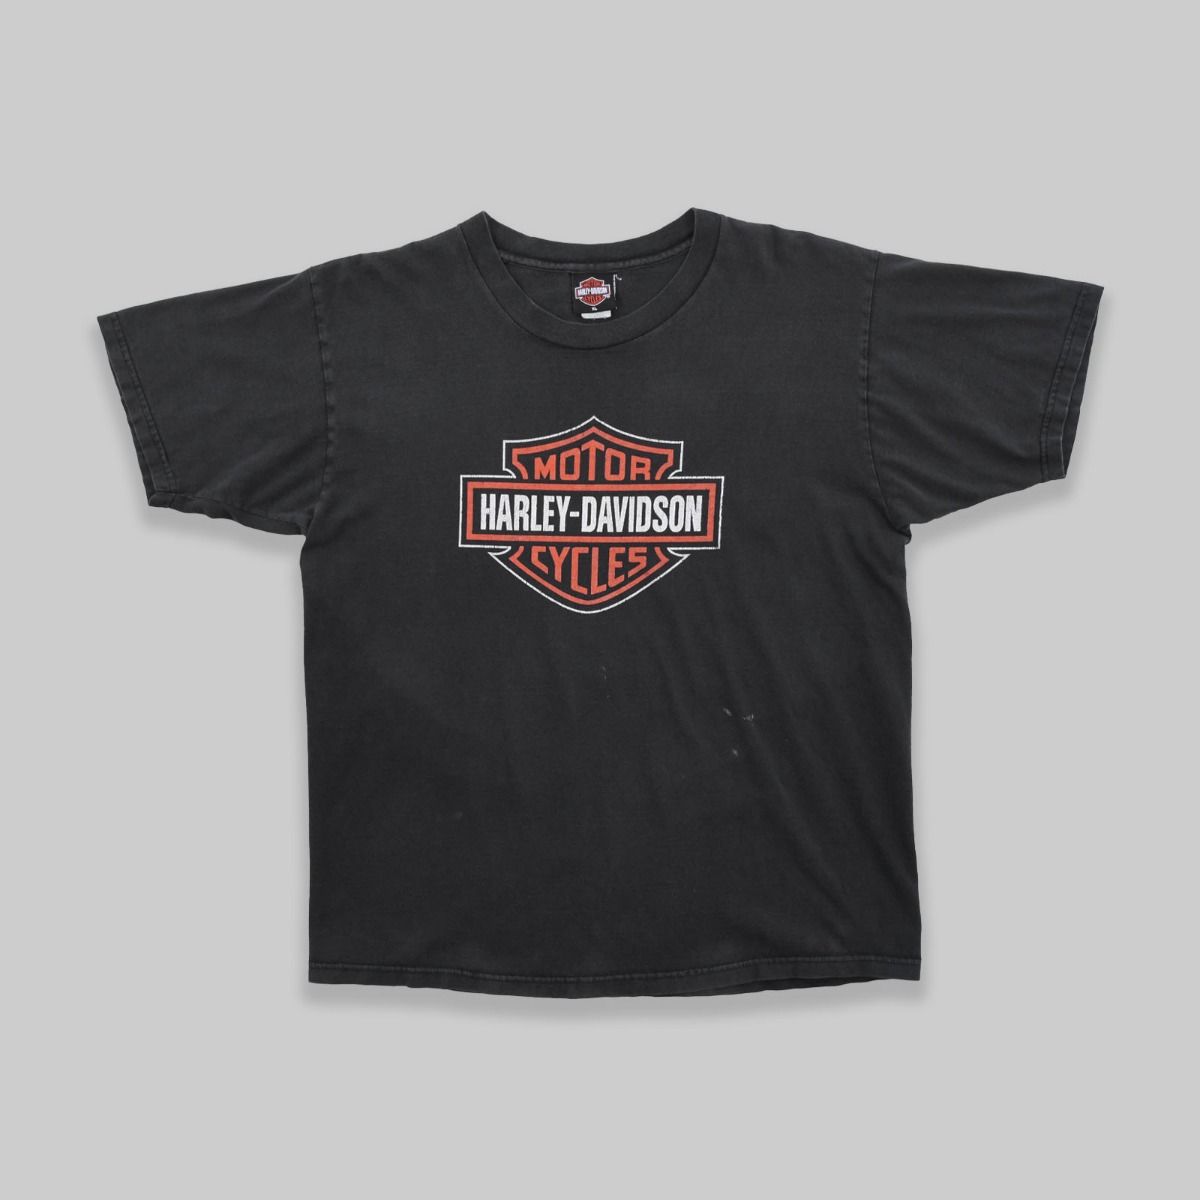 Harley Davidson 1990s T-Shirt